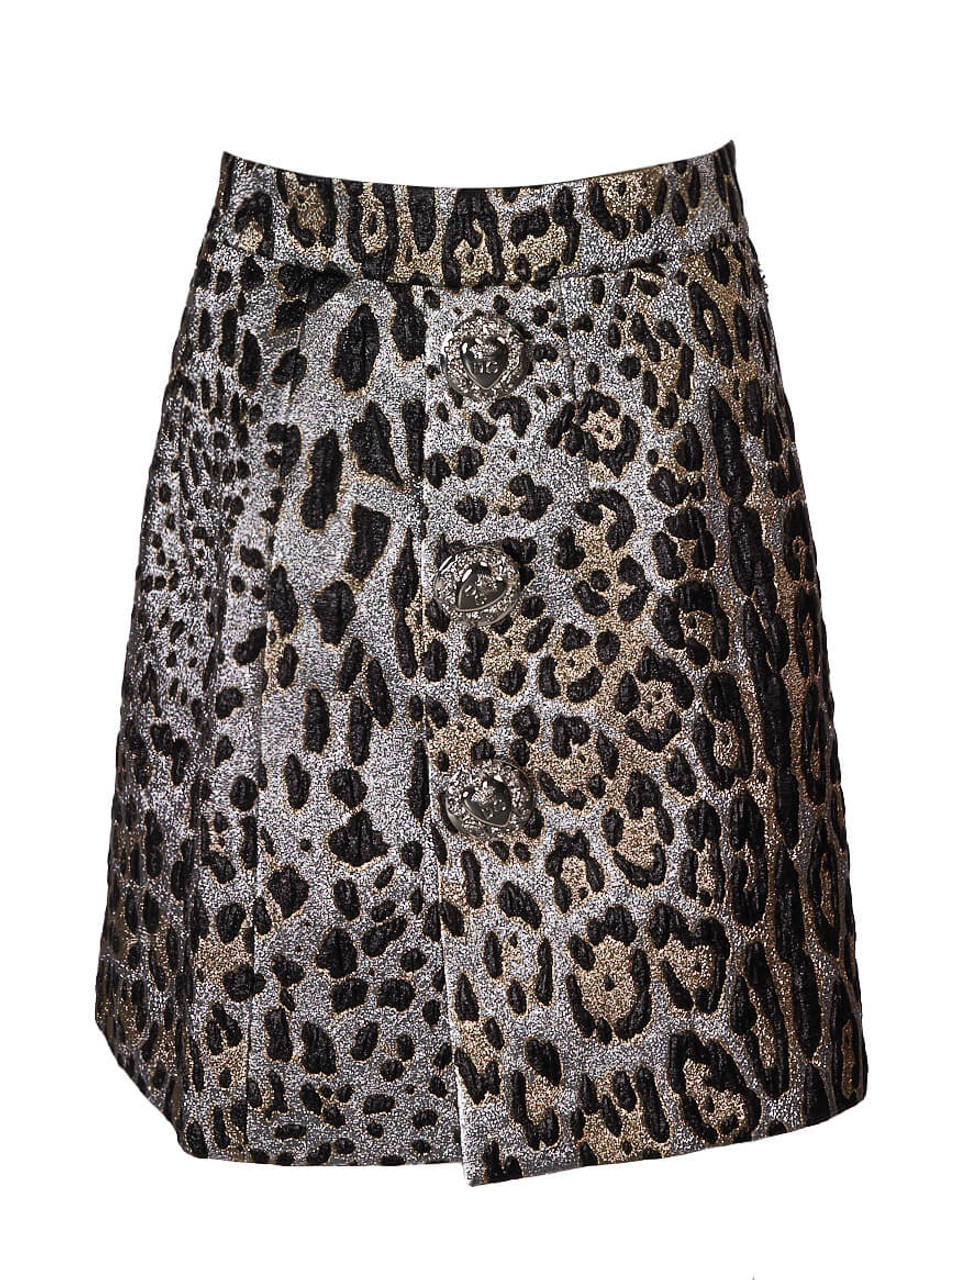 Women Dolce & Gabbana Leopard Mini Skirt - Silver Size S UK 8 US 4 IT 42